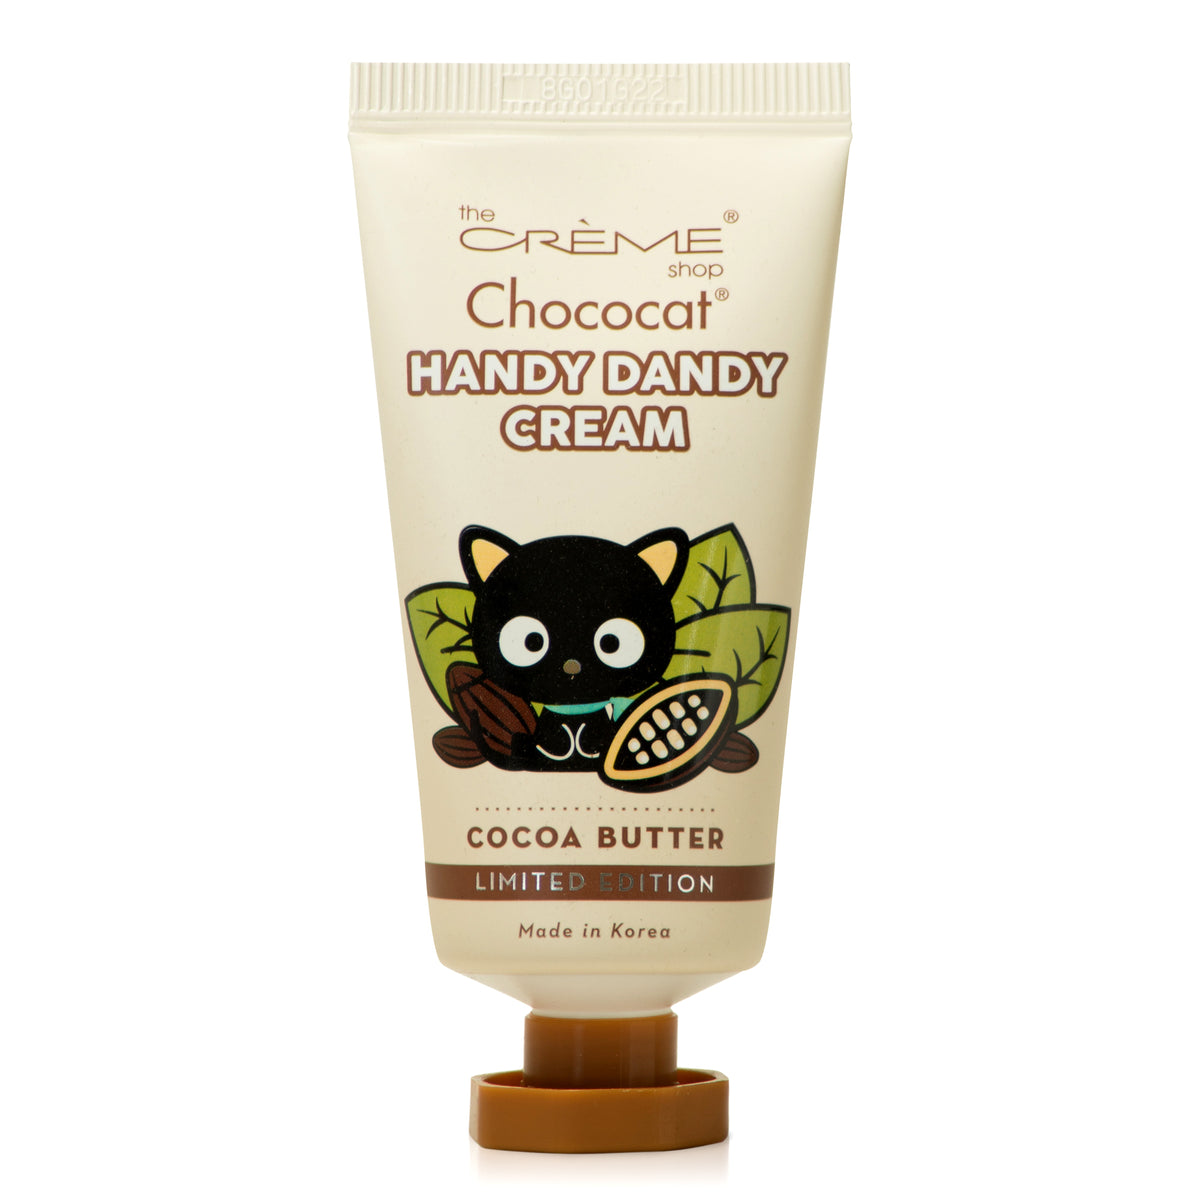 Chococat x The Crème Shop Handy Dandy Cream (Cocoa Butter) Beauty The Crème Shop   